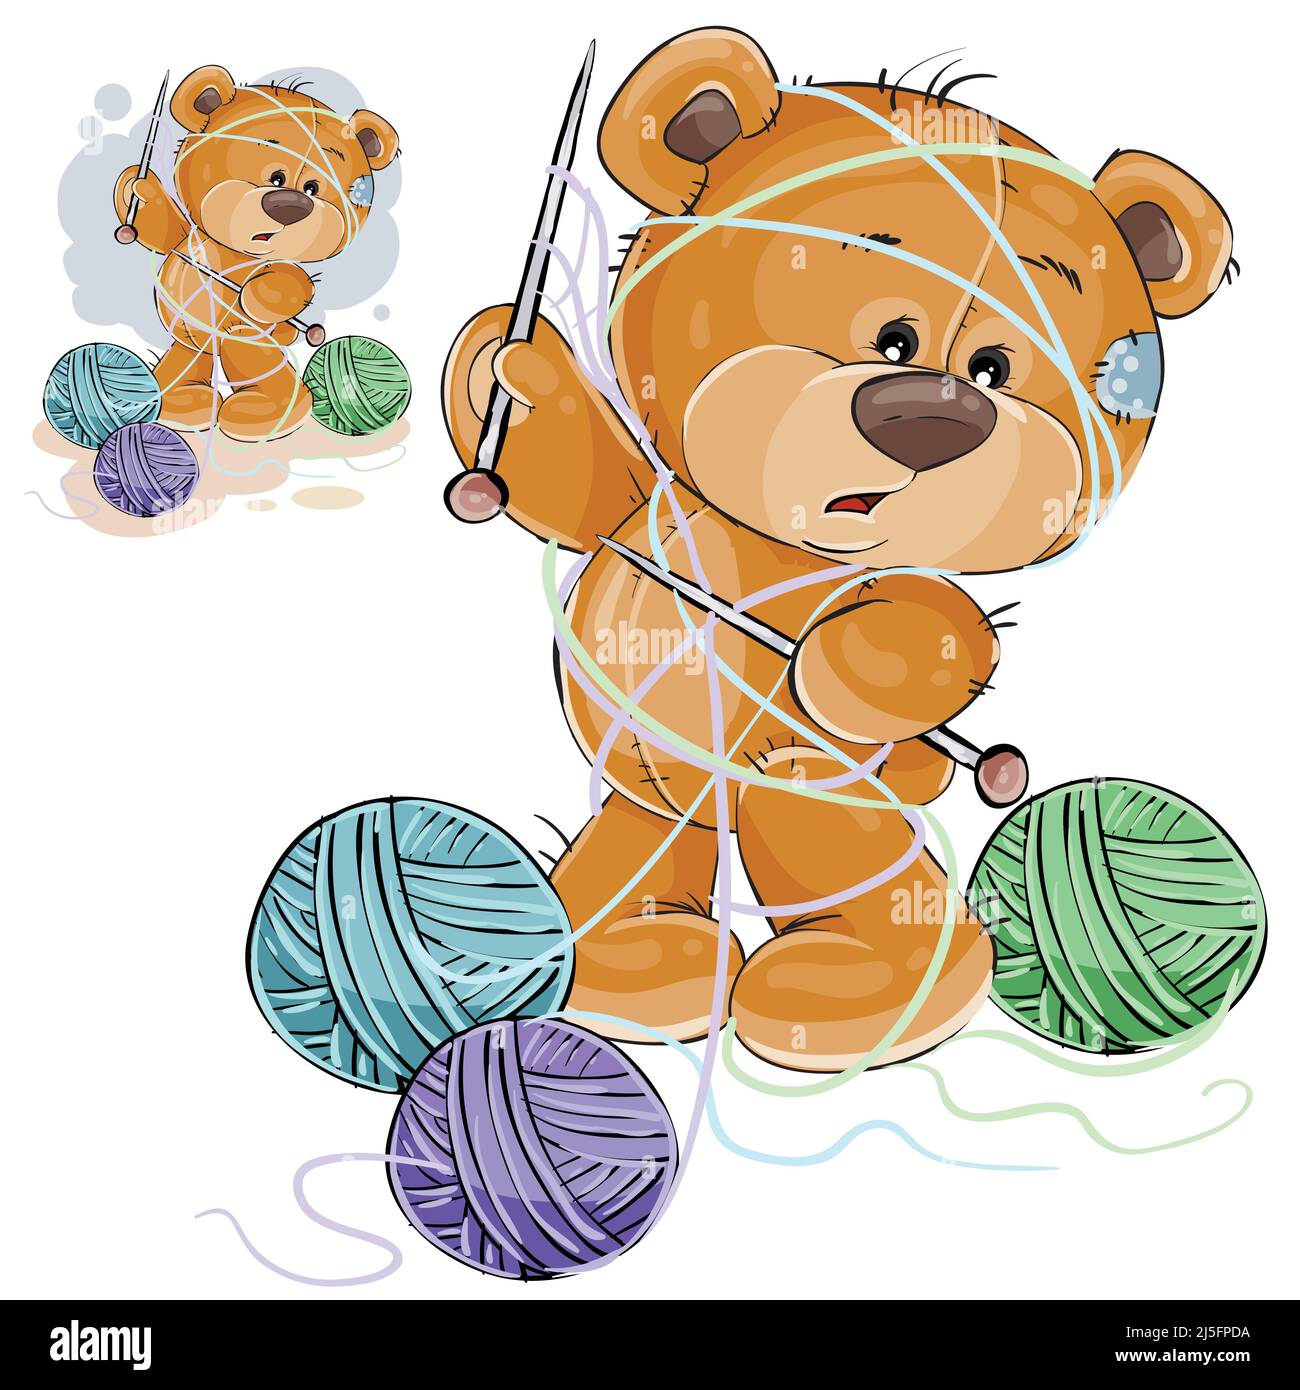 Illustration vectorielle d'un ours en peluche brun tenant une aiguille tricotage dans sa patte et emmêlée dans des fils, artisanat. Imprimer, modèle, élément de conception Illustration de Vecteur